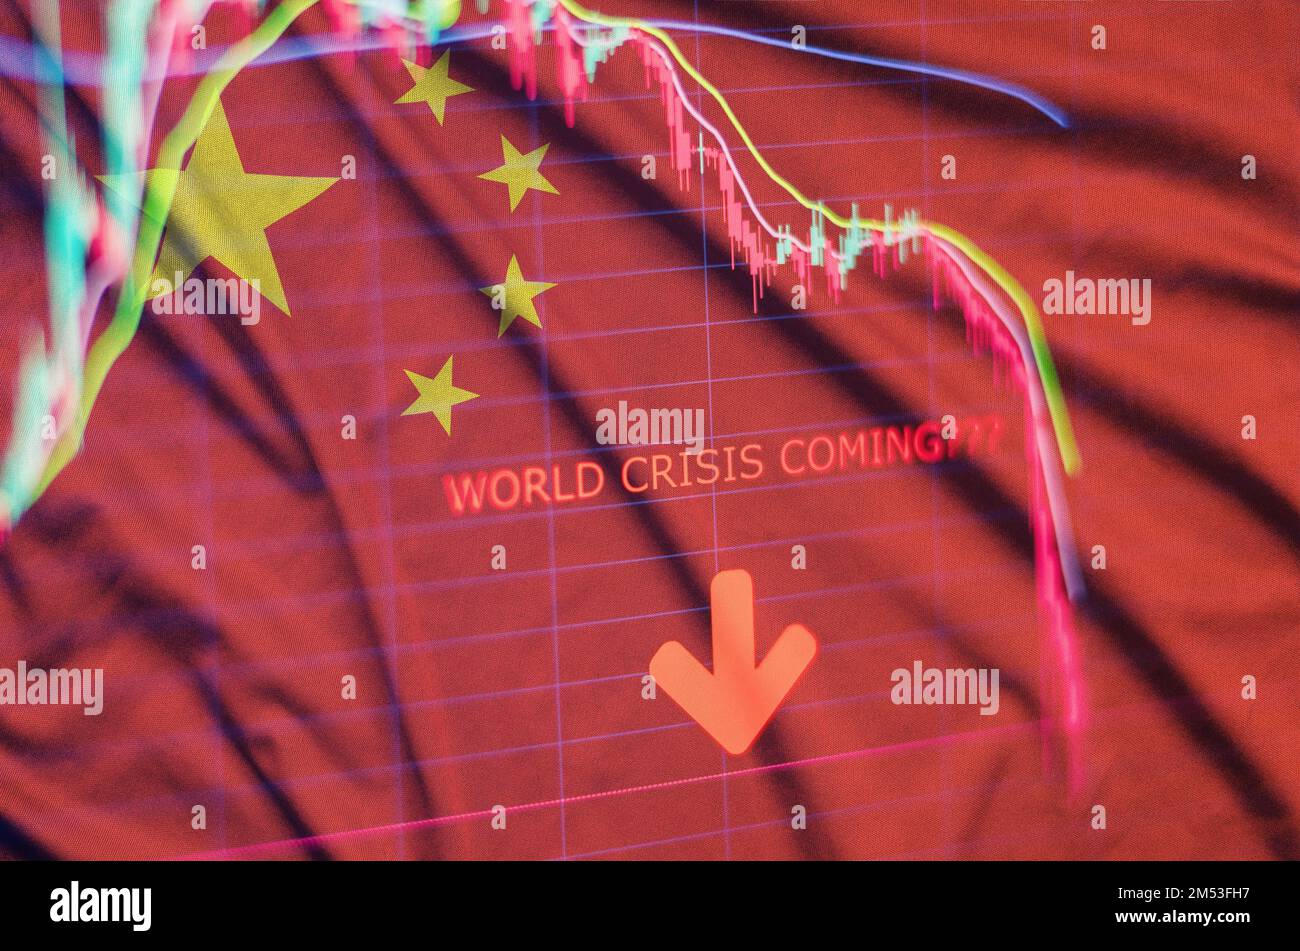 Chinesische Wirtschaftskrise Panik Börsenkrach Diagramm, chinesische Flagge und Wirtschaftskrise, Markt unten Stockfoto